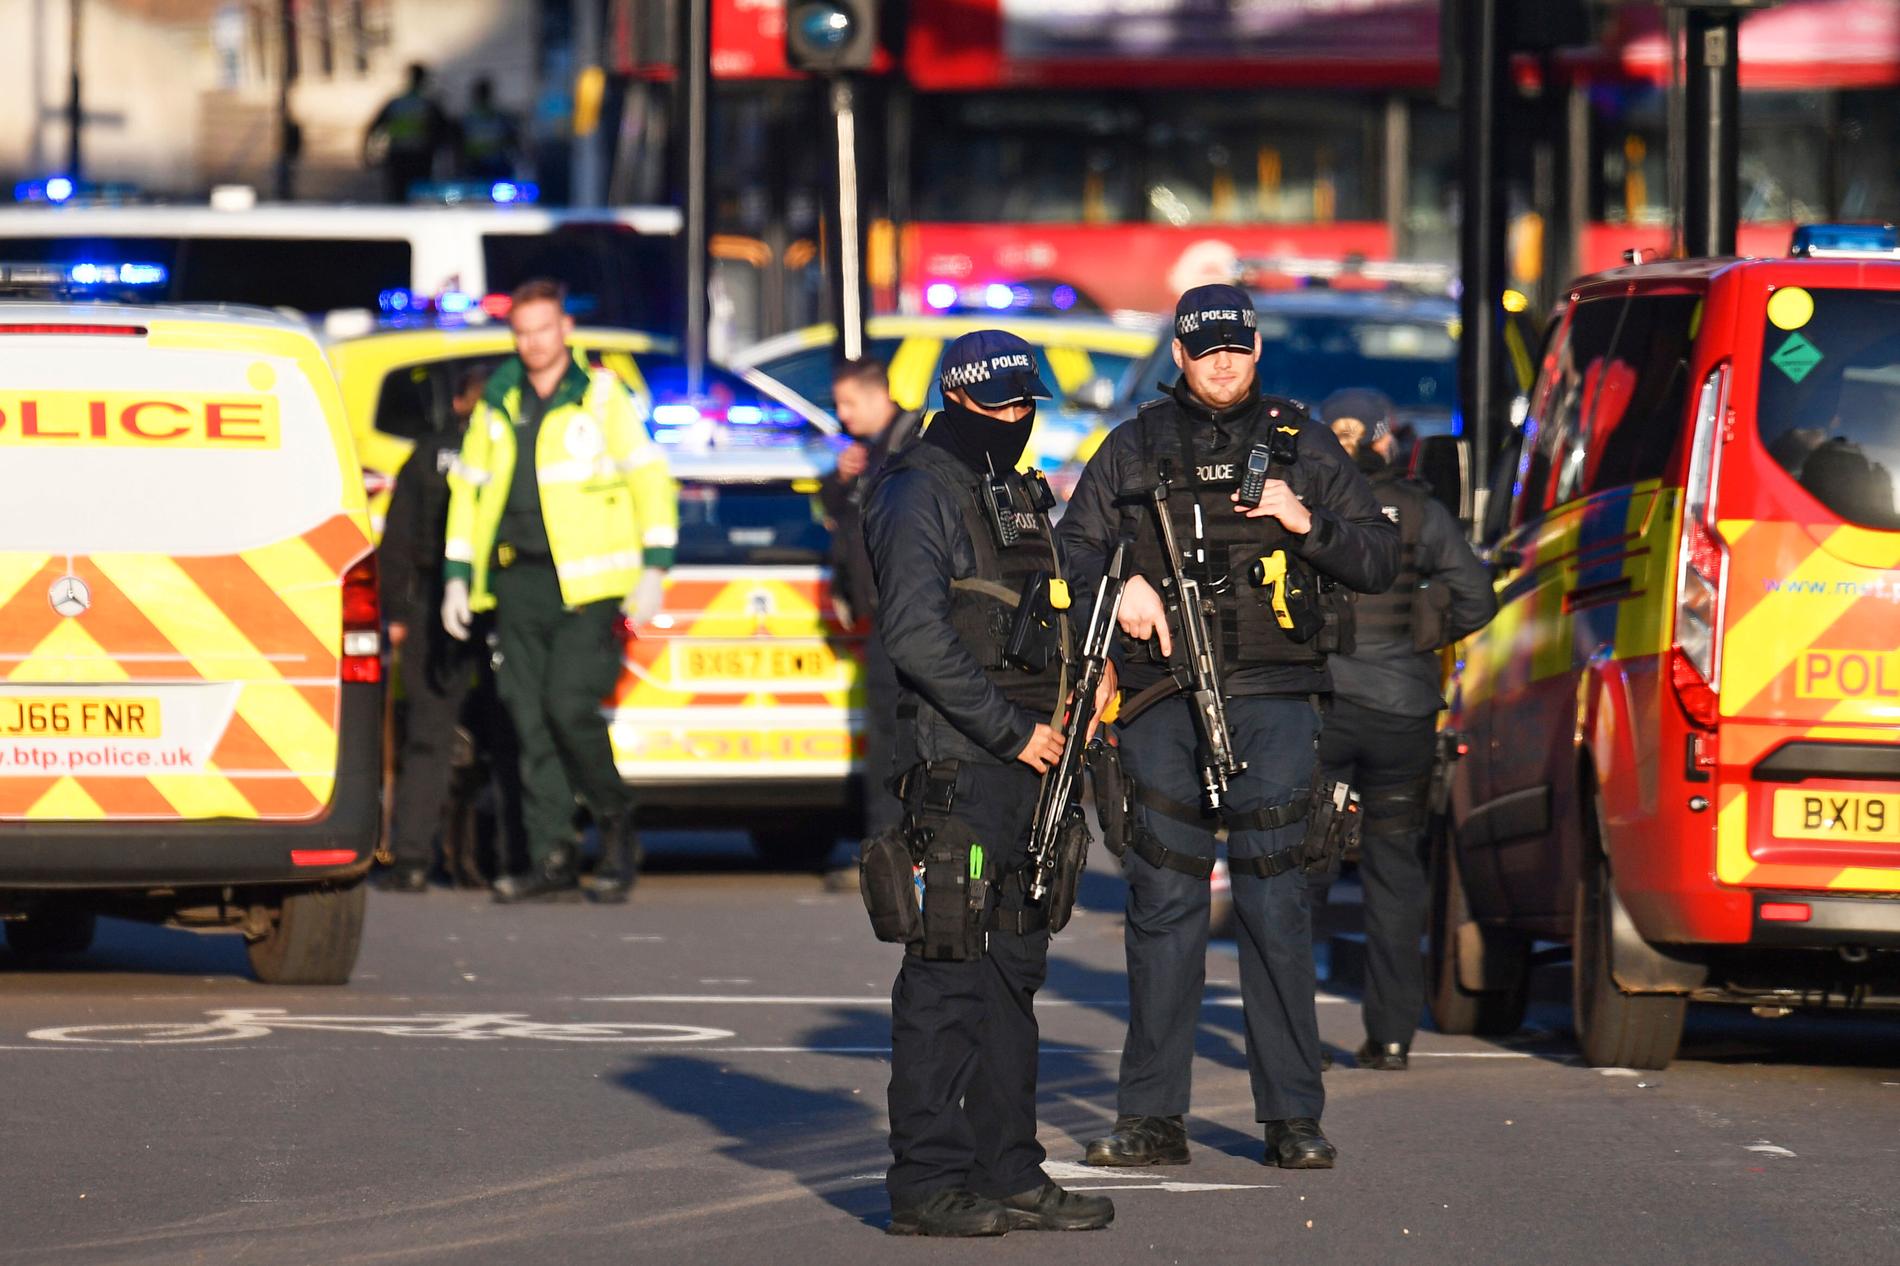 En man uppges ha attackerat människor med kniv på London Bridge i centrala London på fredagseftermiddagen.